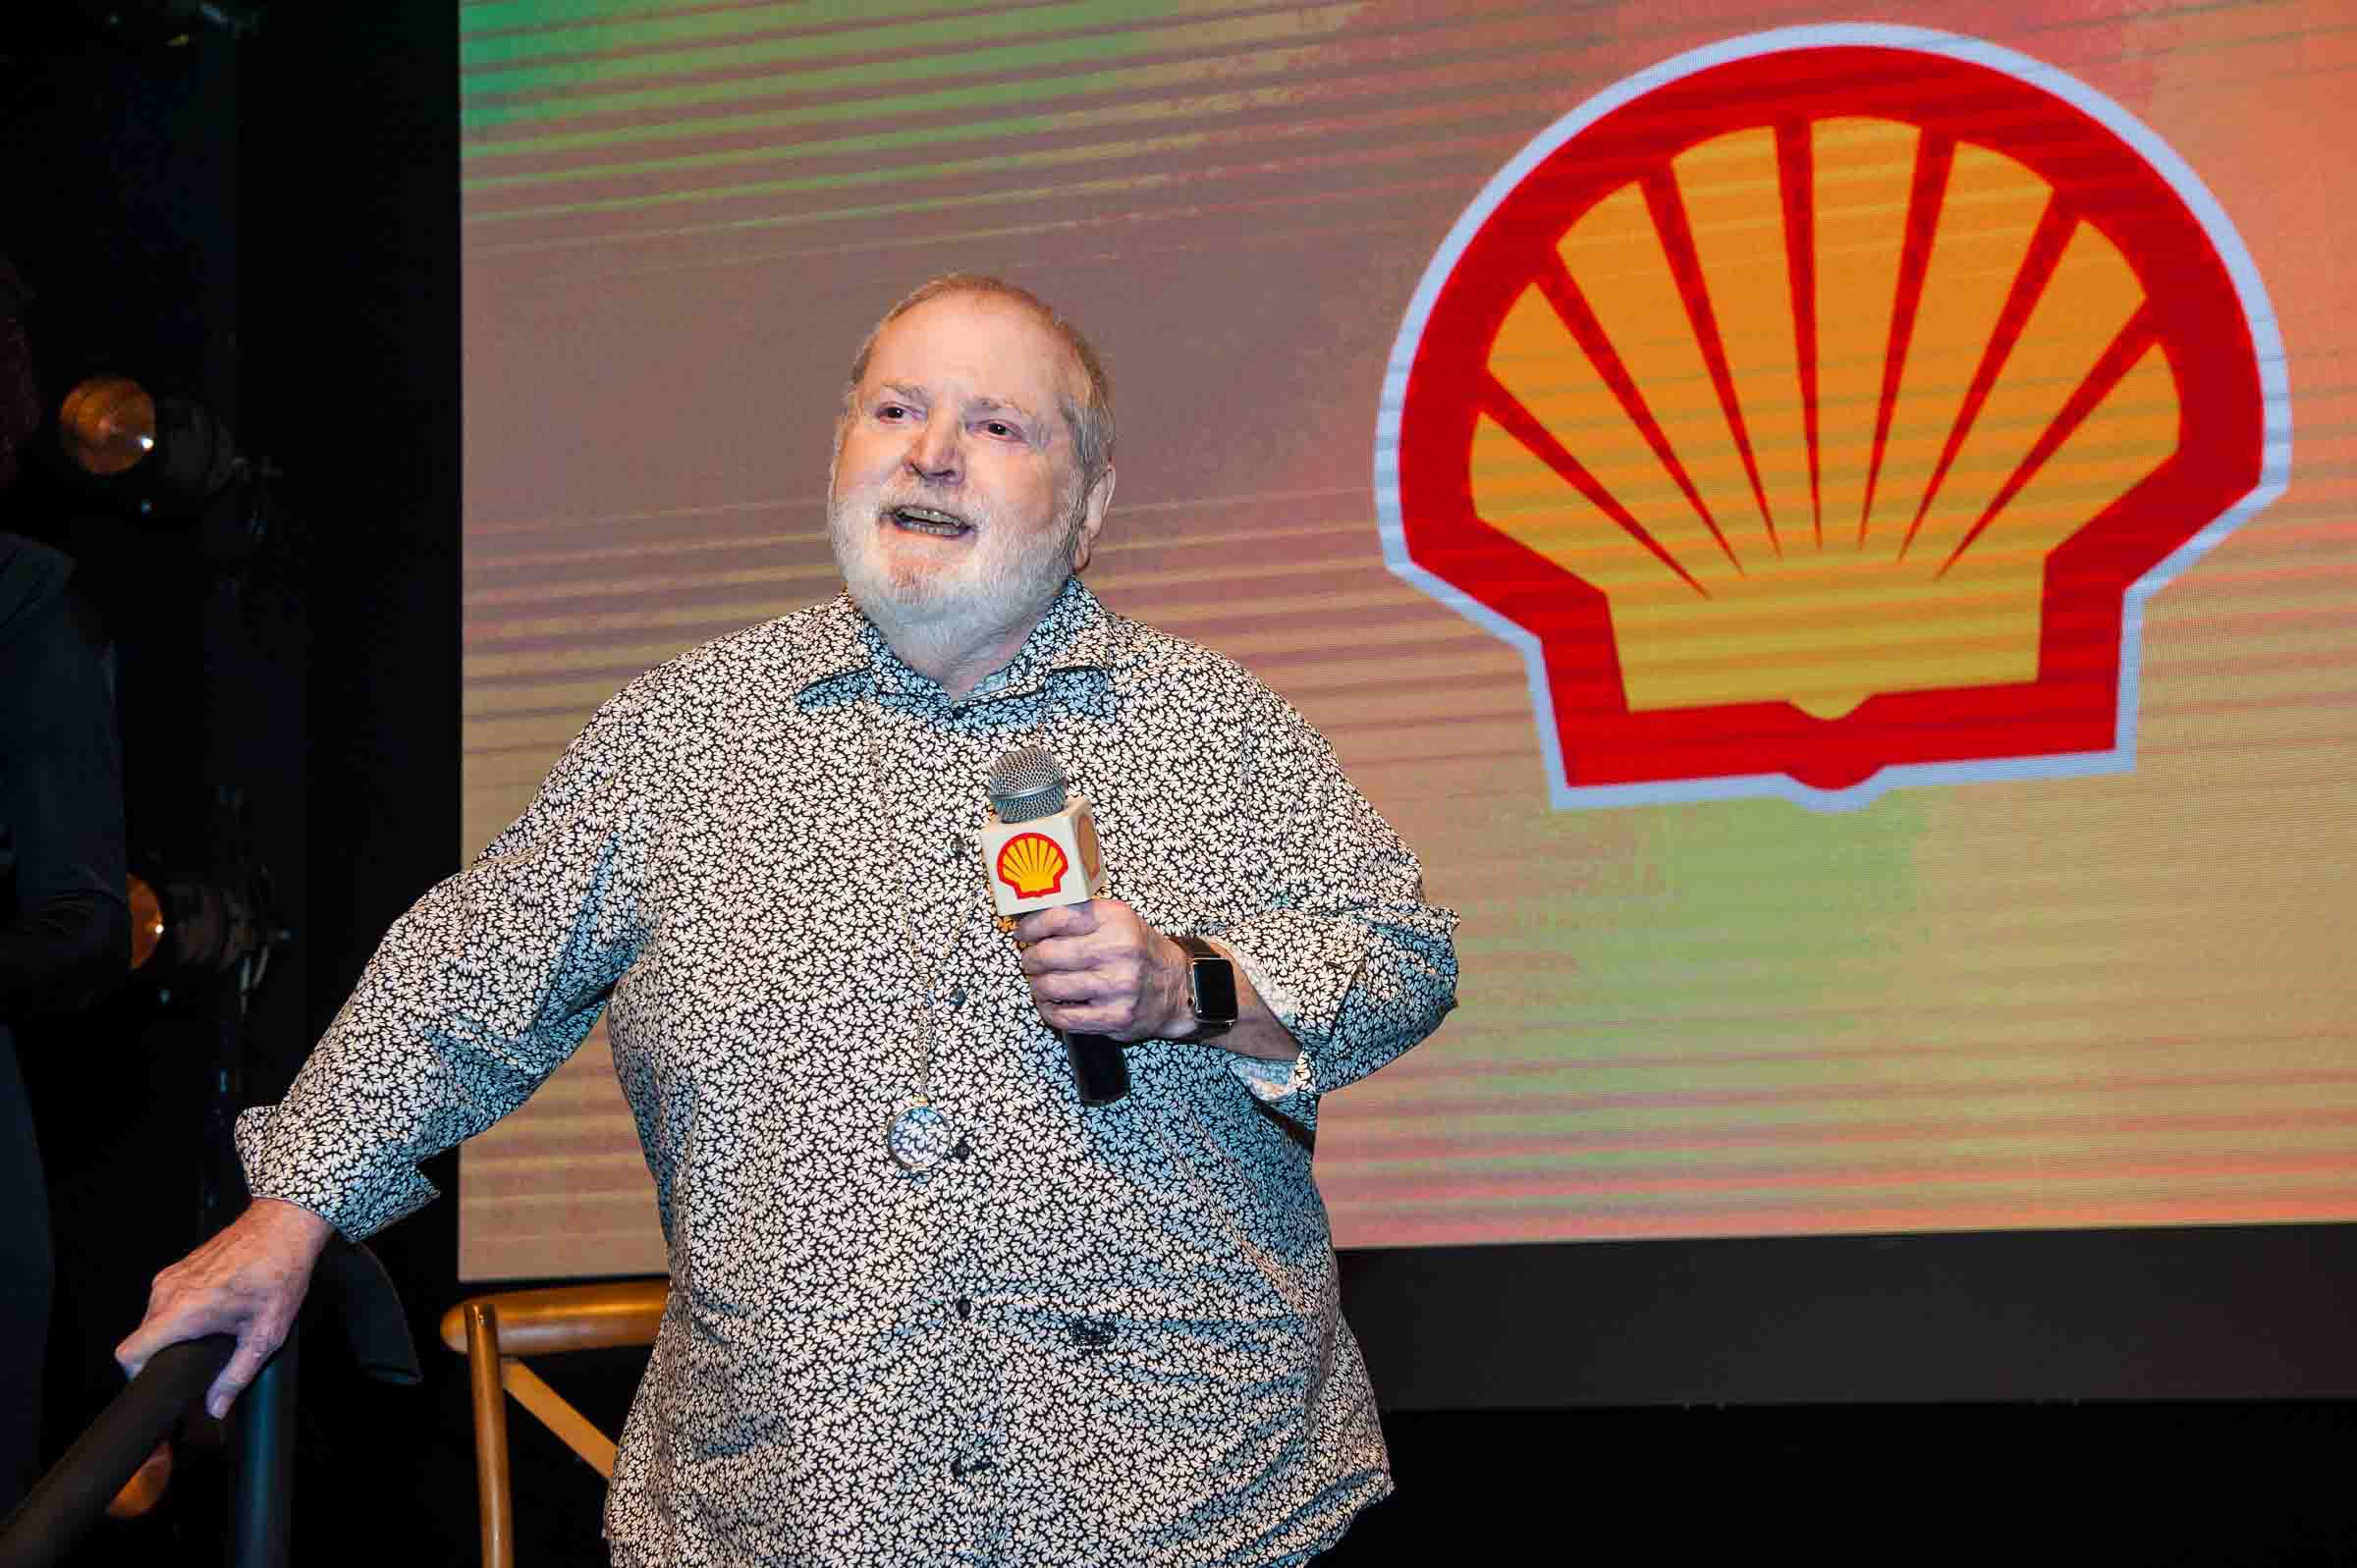 Jô Soares é homenageado no Prêmio Shell de Teatro